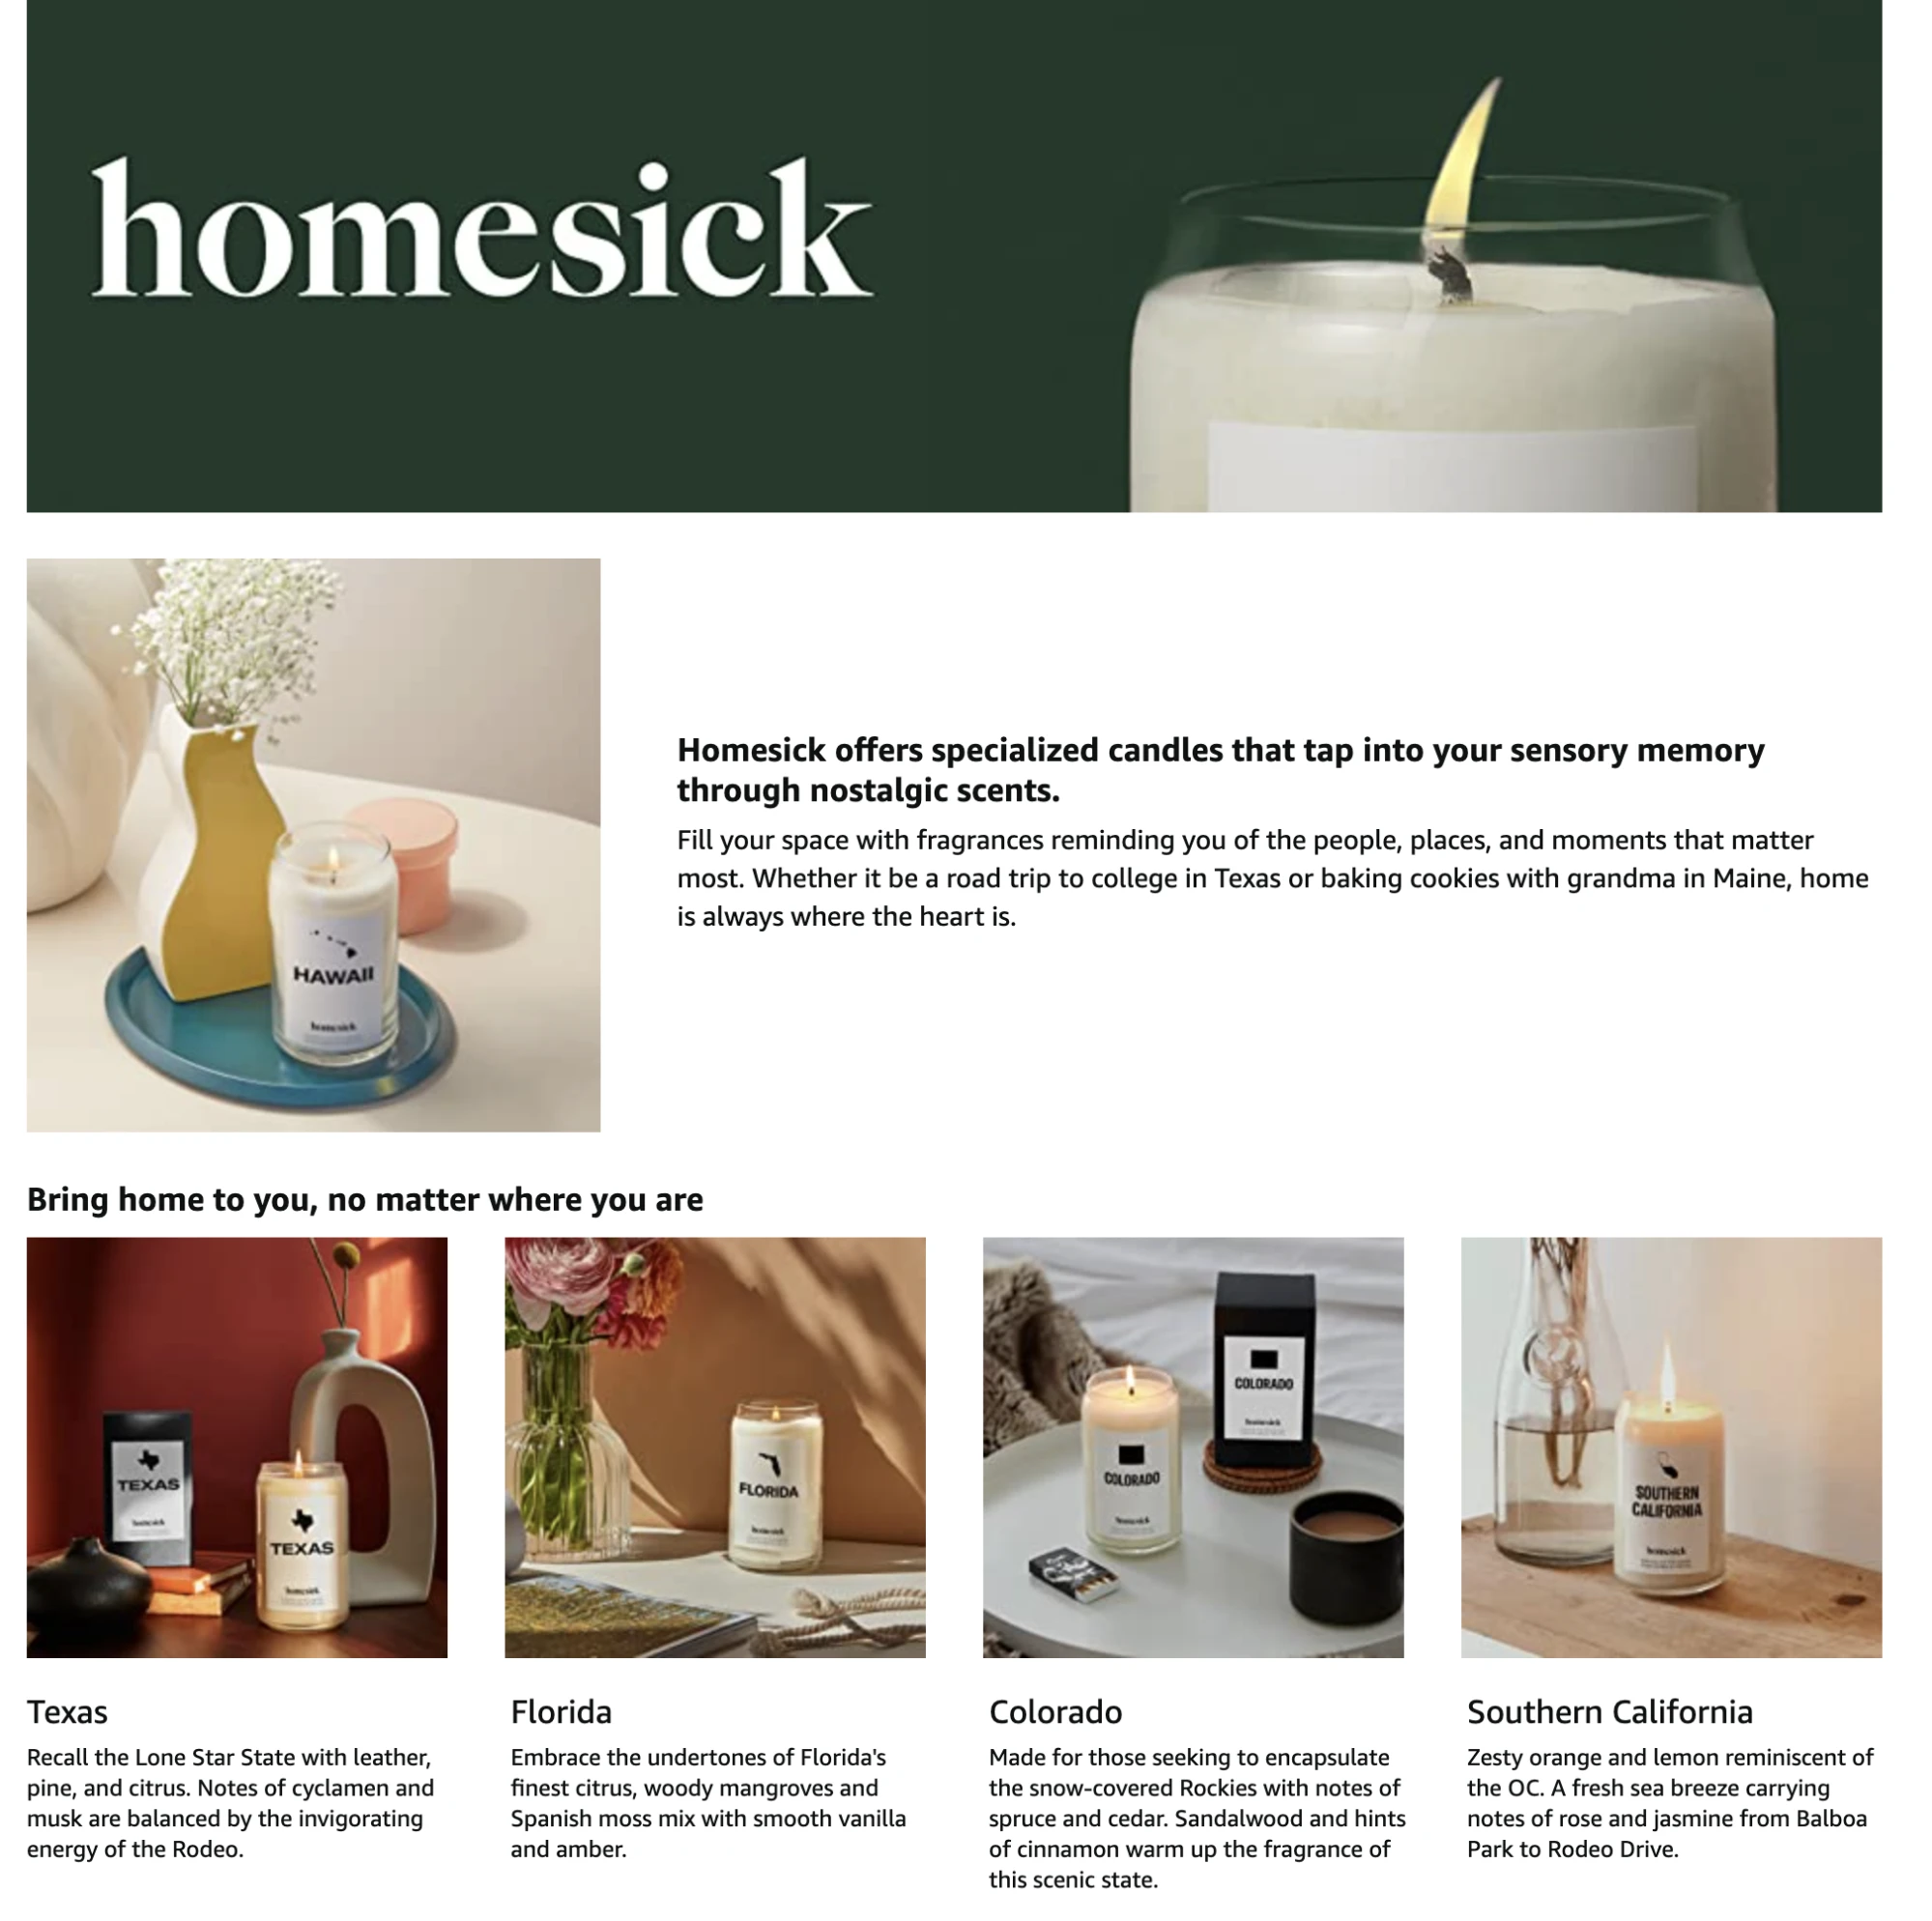 Homesick 的品牌故事